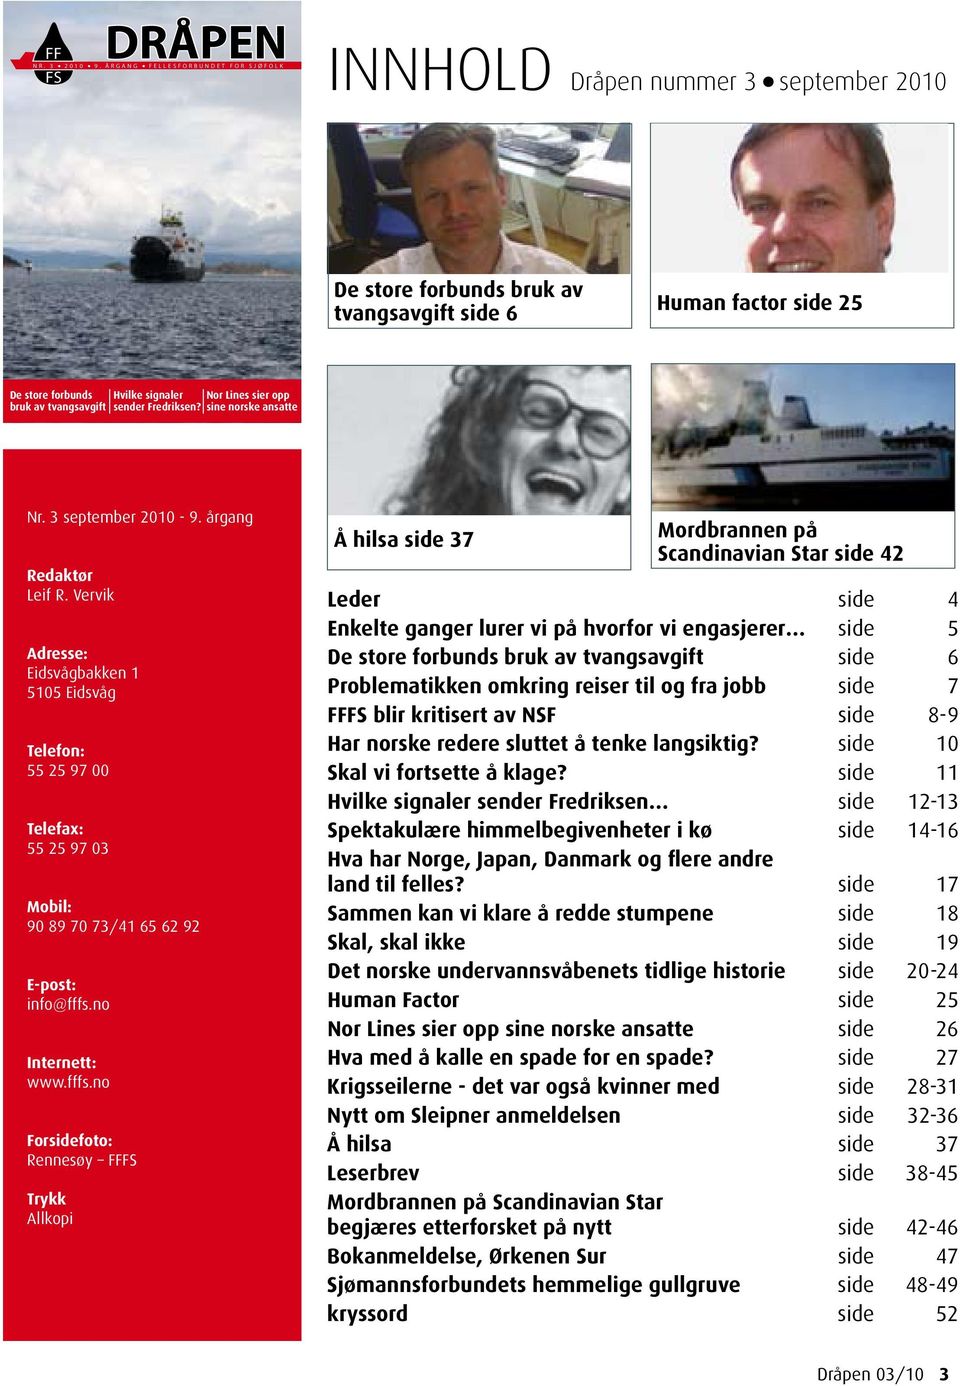 Hvilke signaler Nor Lines sier opp bruk av tvangsavgift sender Fredriksen? sine norske ansatte Nr. 3 september 2010-9. årgang Redaktør Leif R.